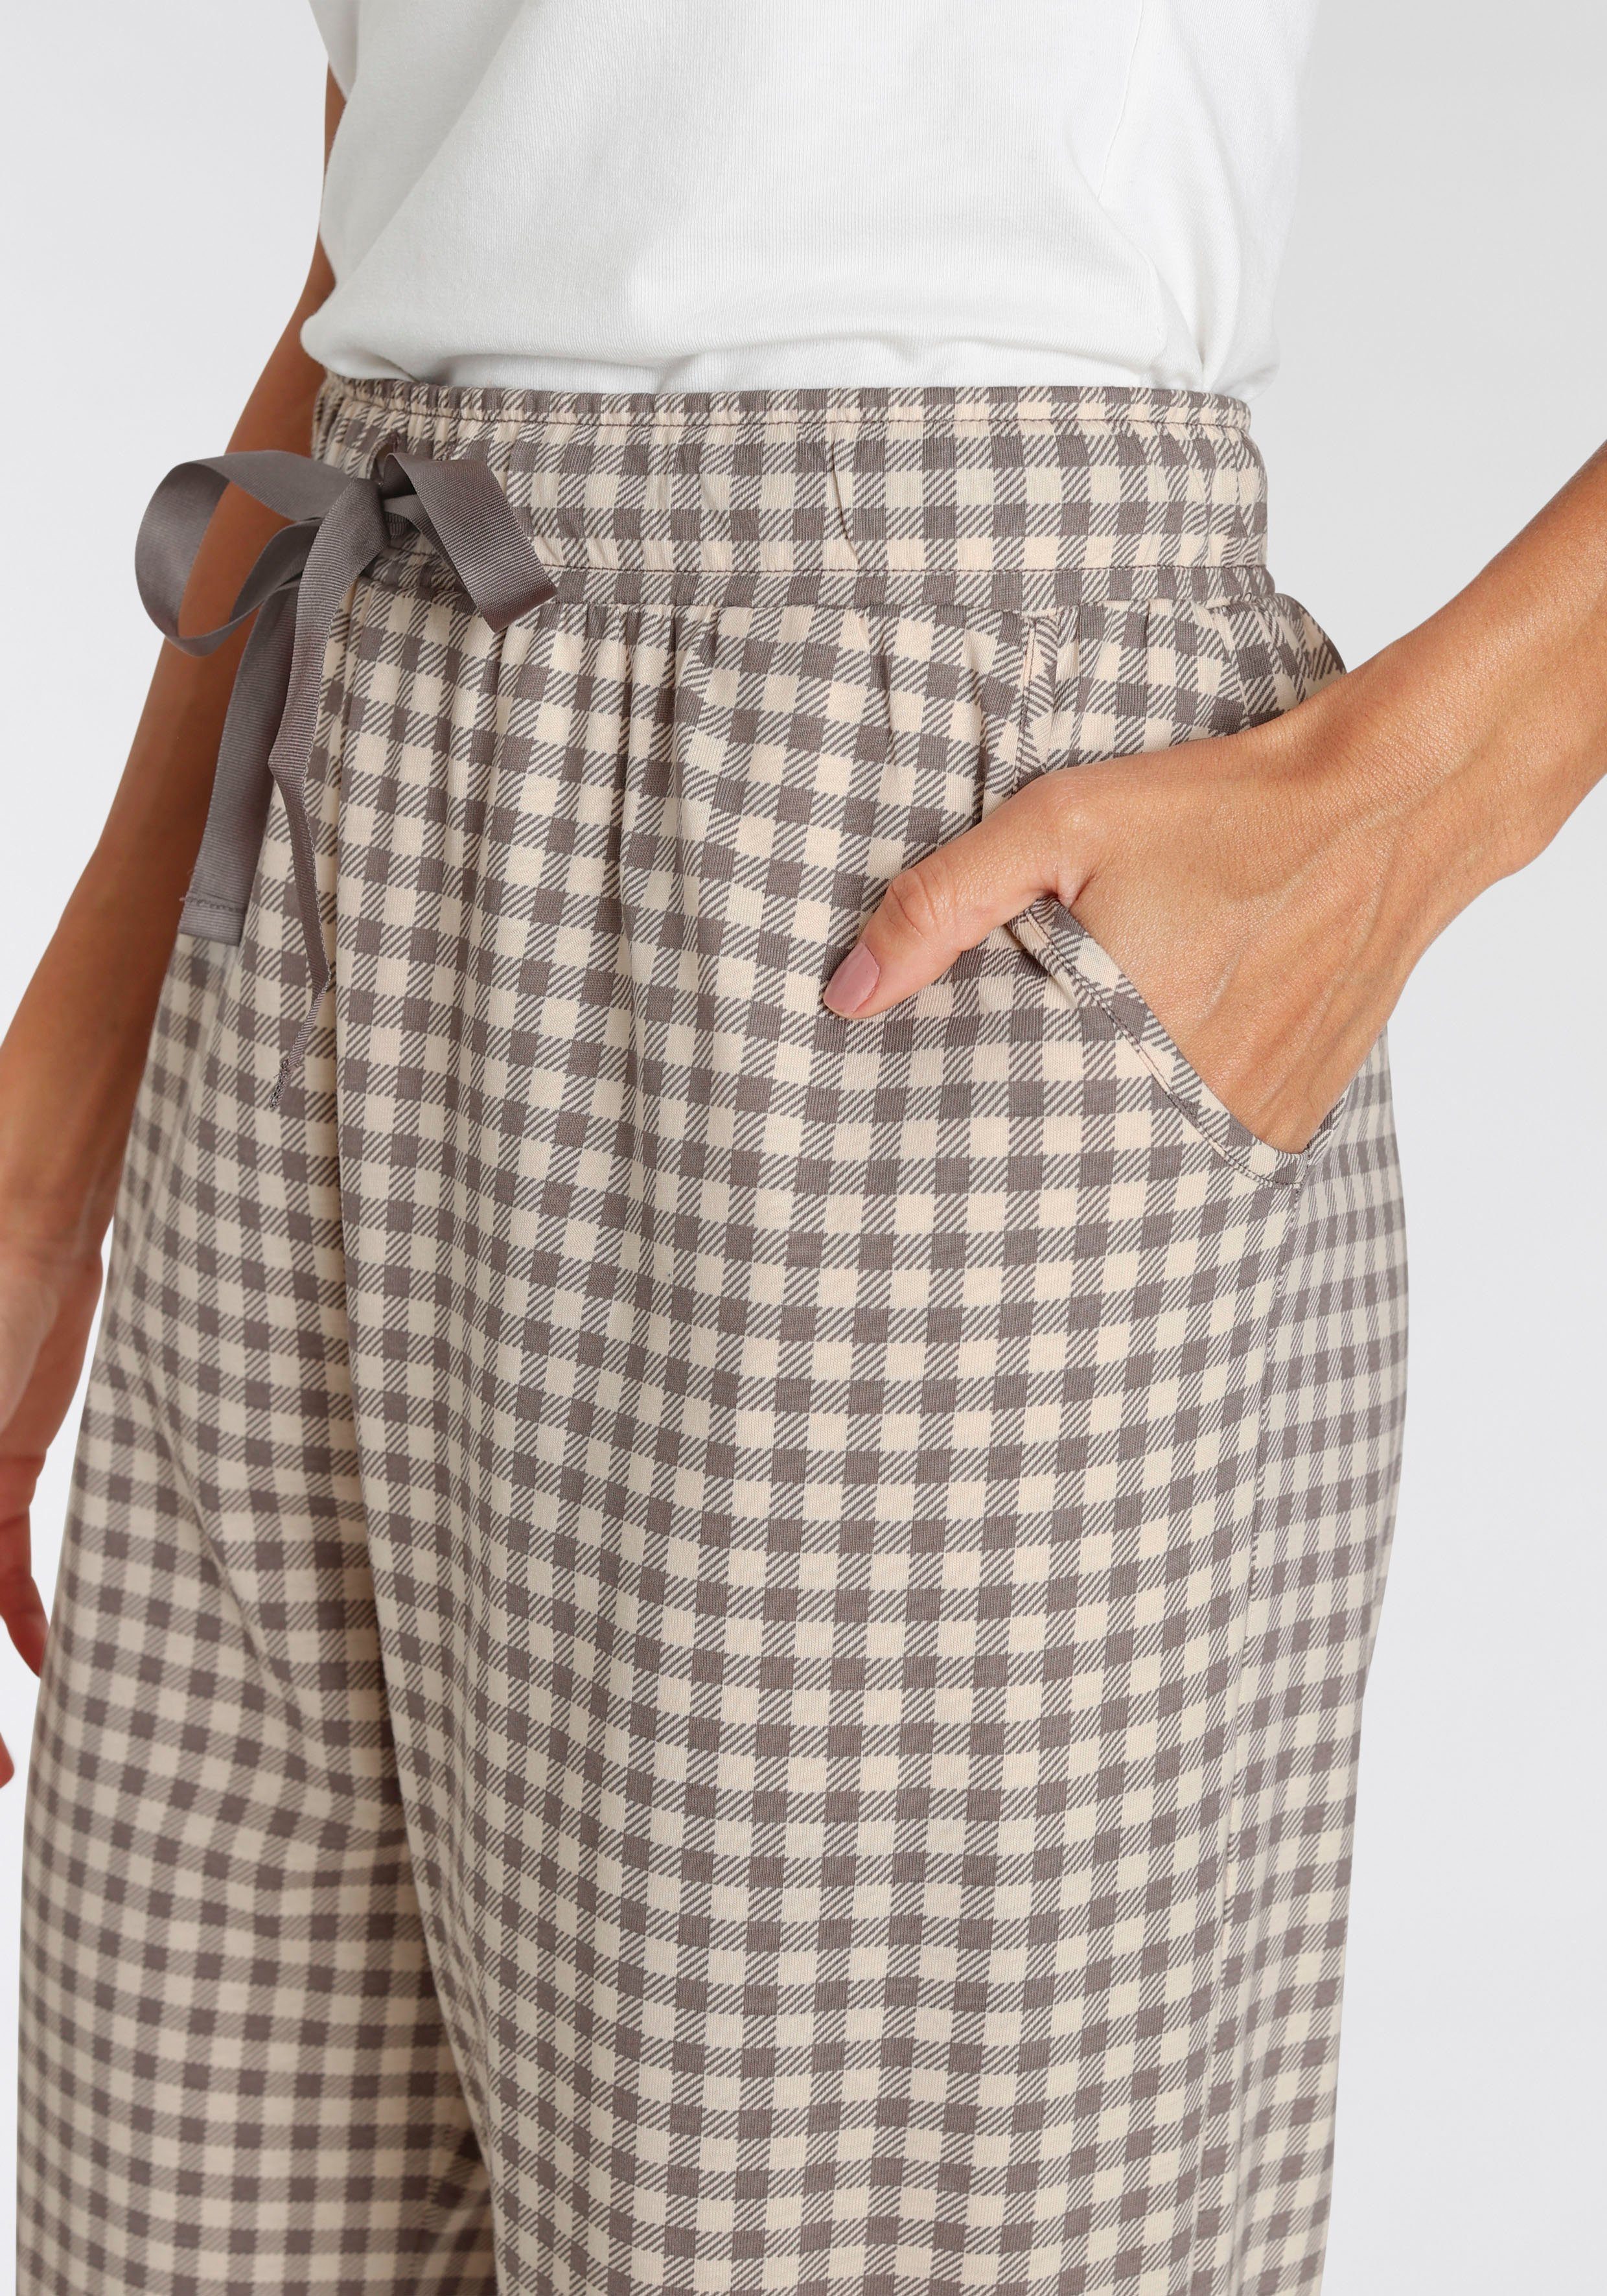 kartiert Schlafhose Pyjamahose mit Triumph Taschen seitlichen